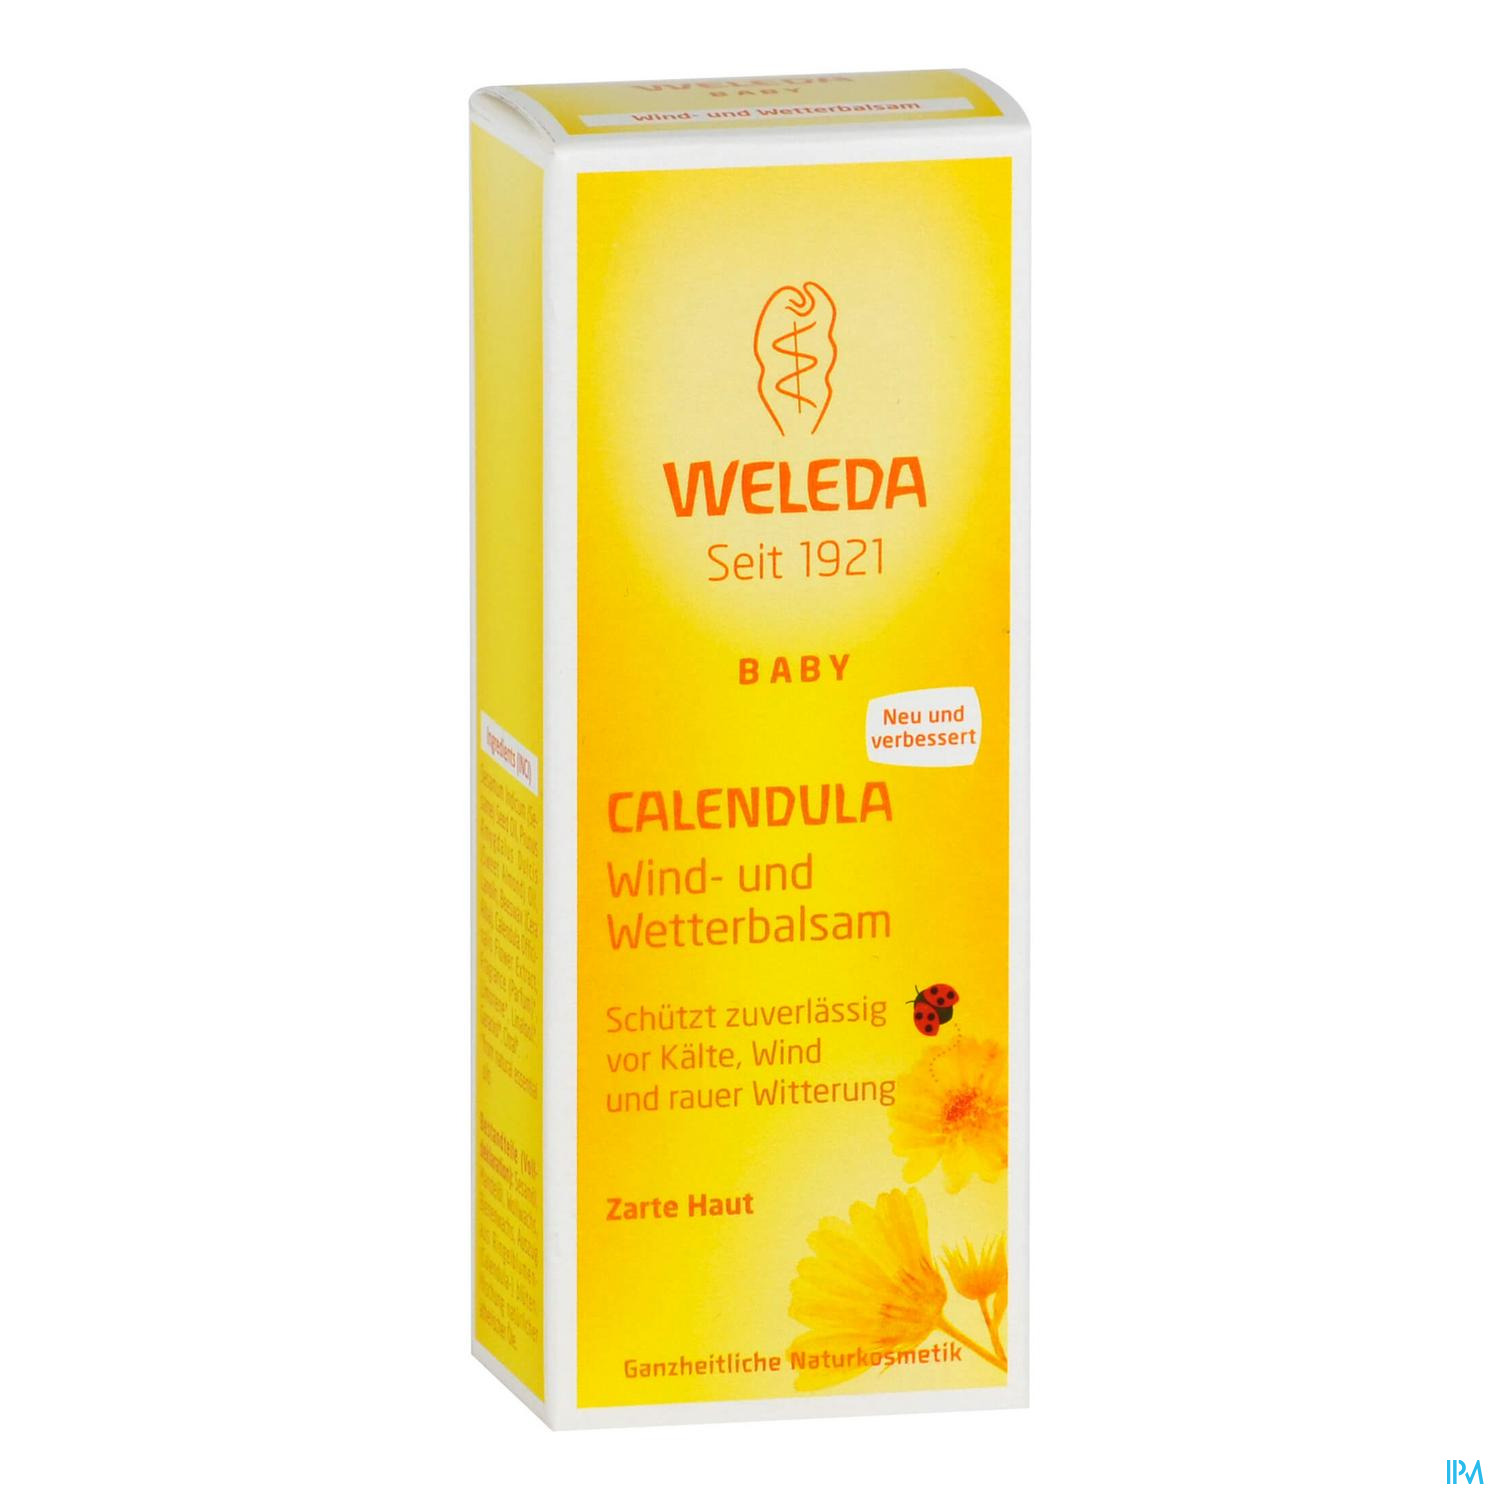 WELEDA CALEND WIND+WETTERBLS 30ML